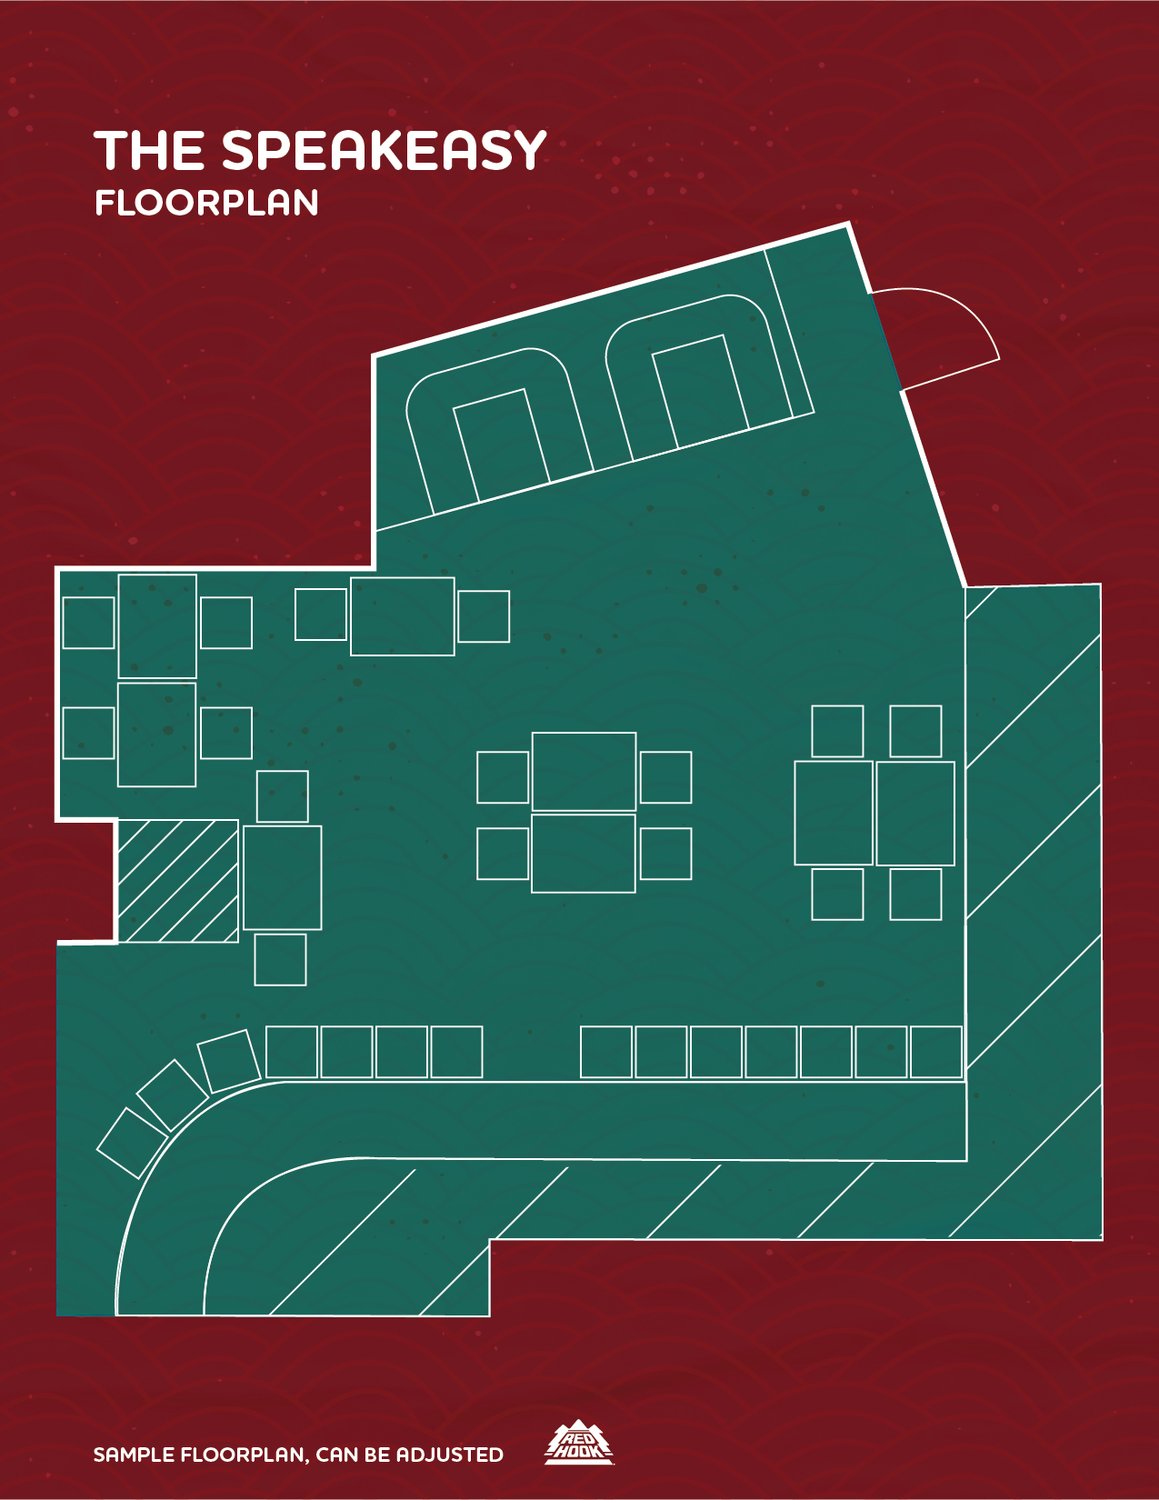 Redhook "The Speakeasy" floorplan. 